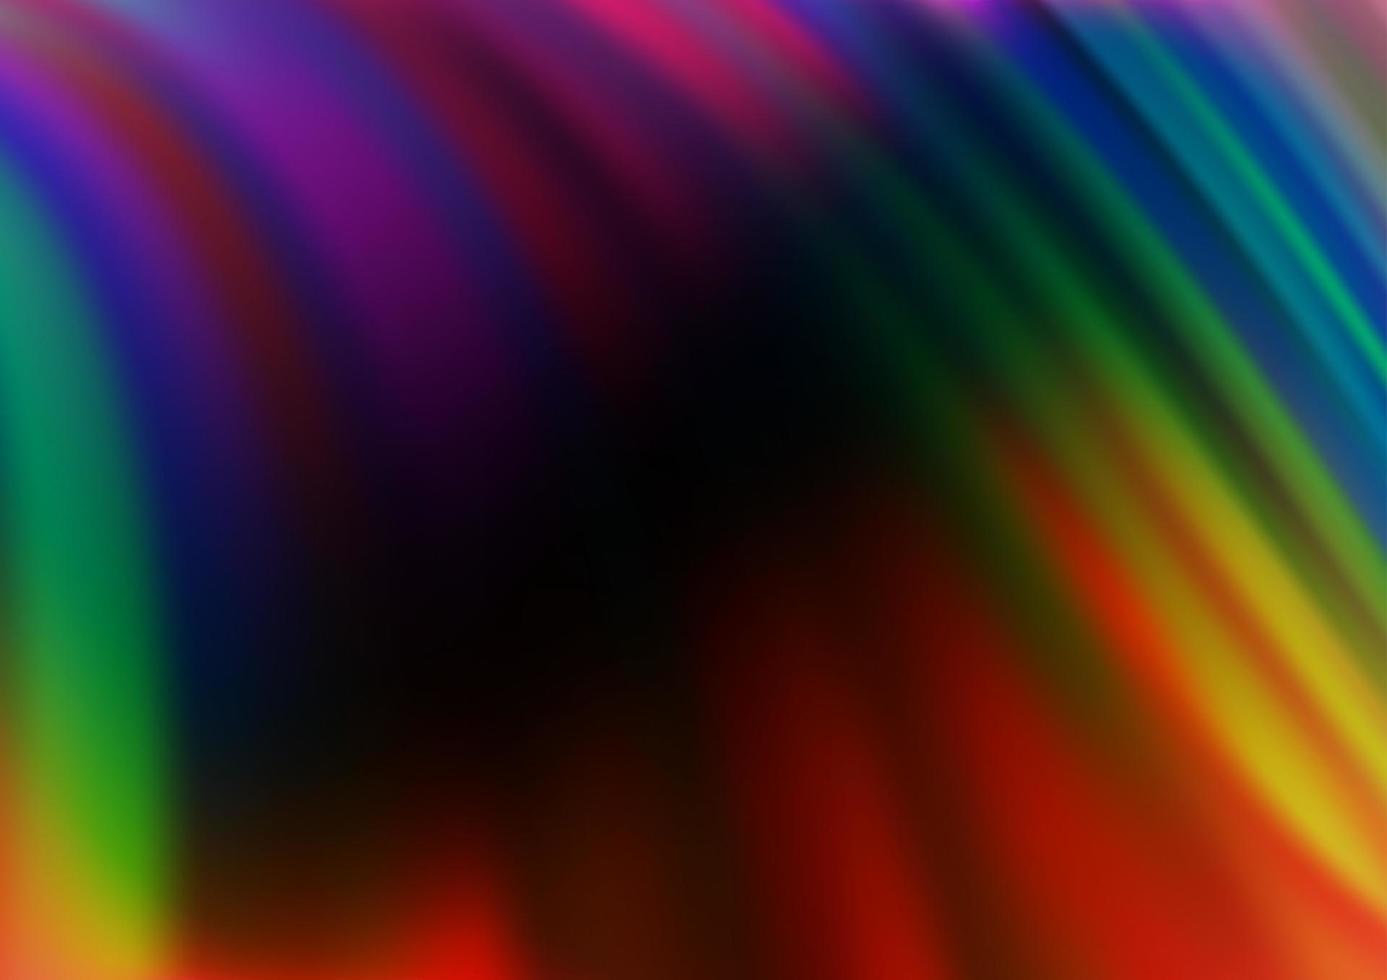 multicolore scuro, motivo vettoriale arcobaleno con forme liquide.